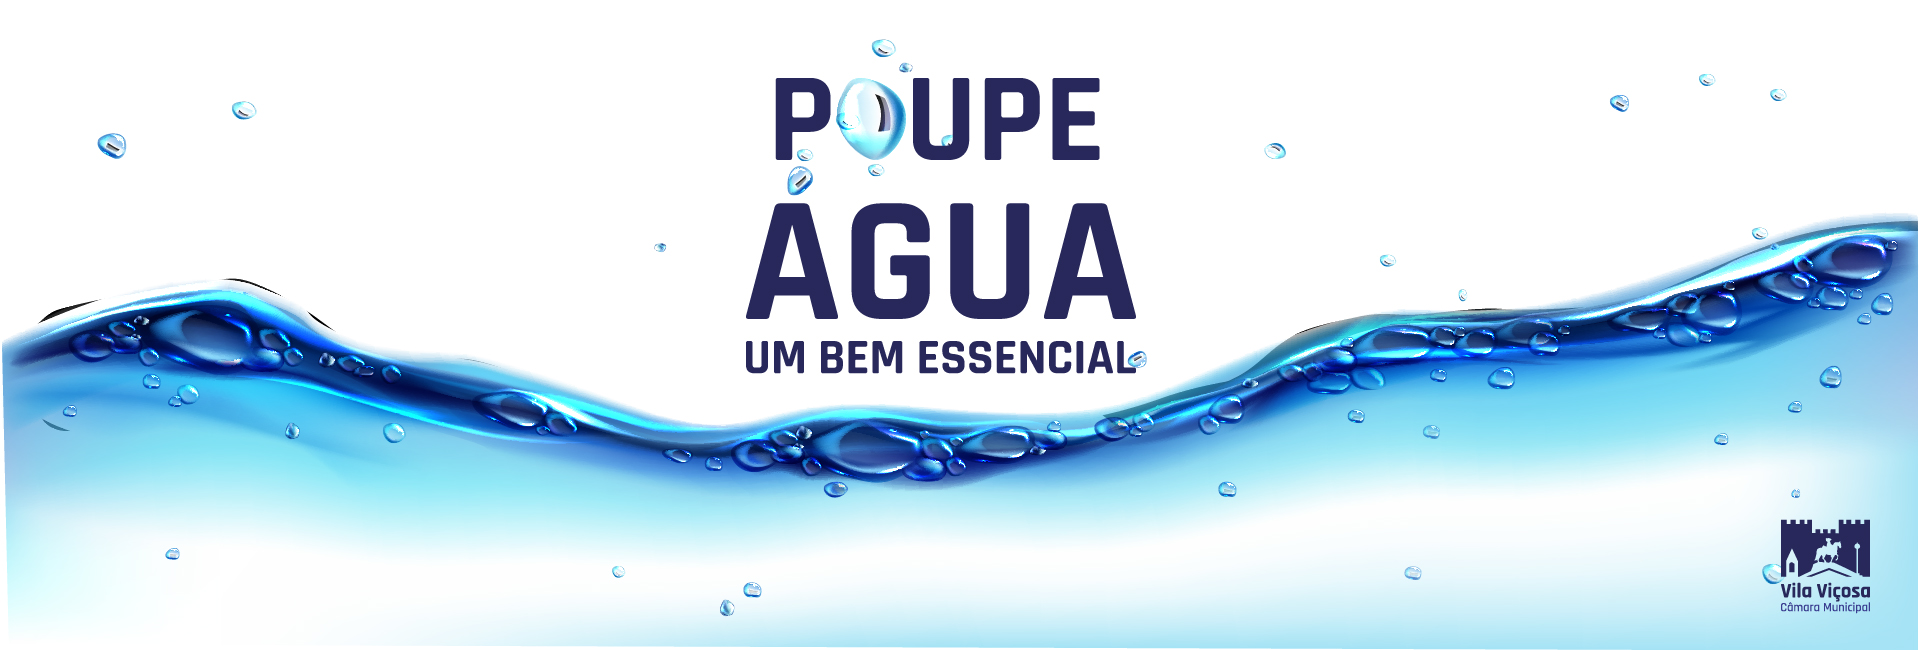 Poupar Agua banner_Prancheta 1